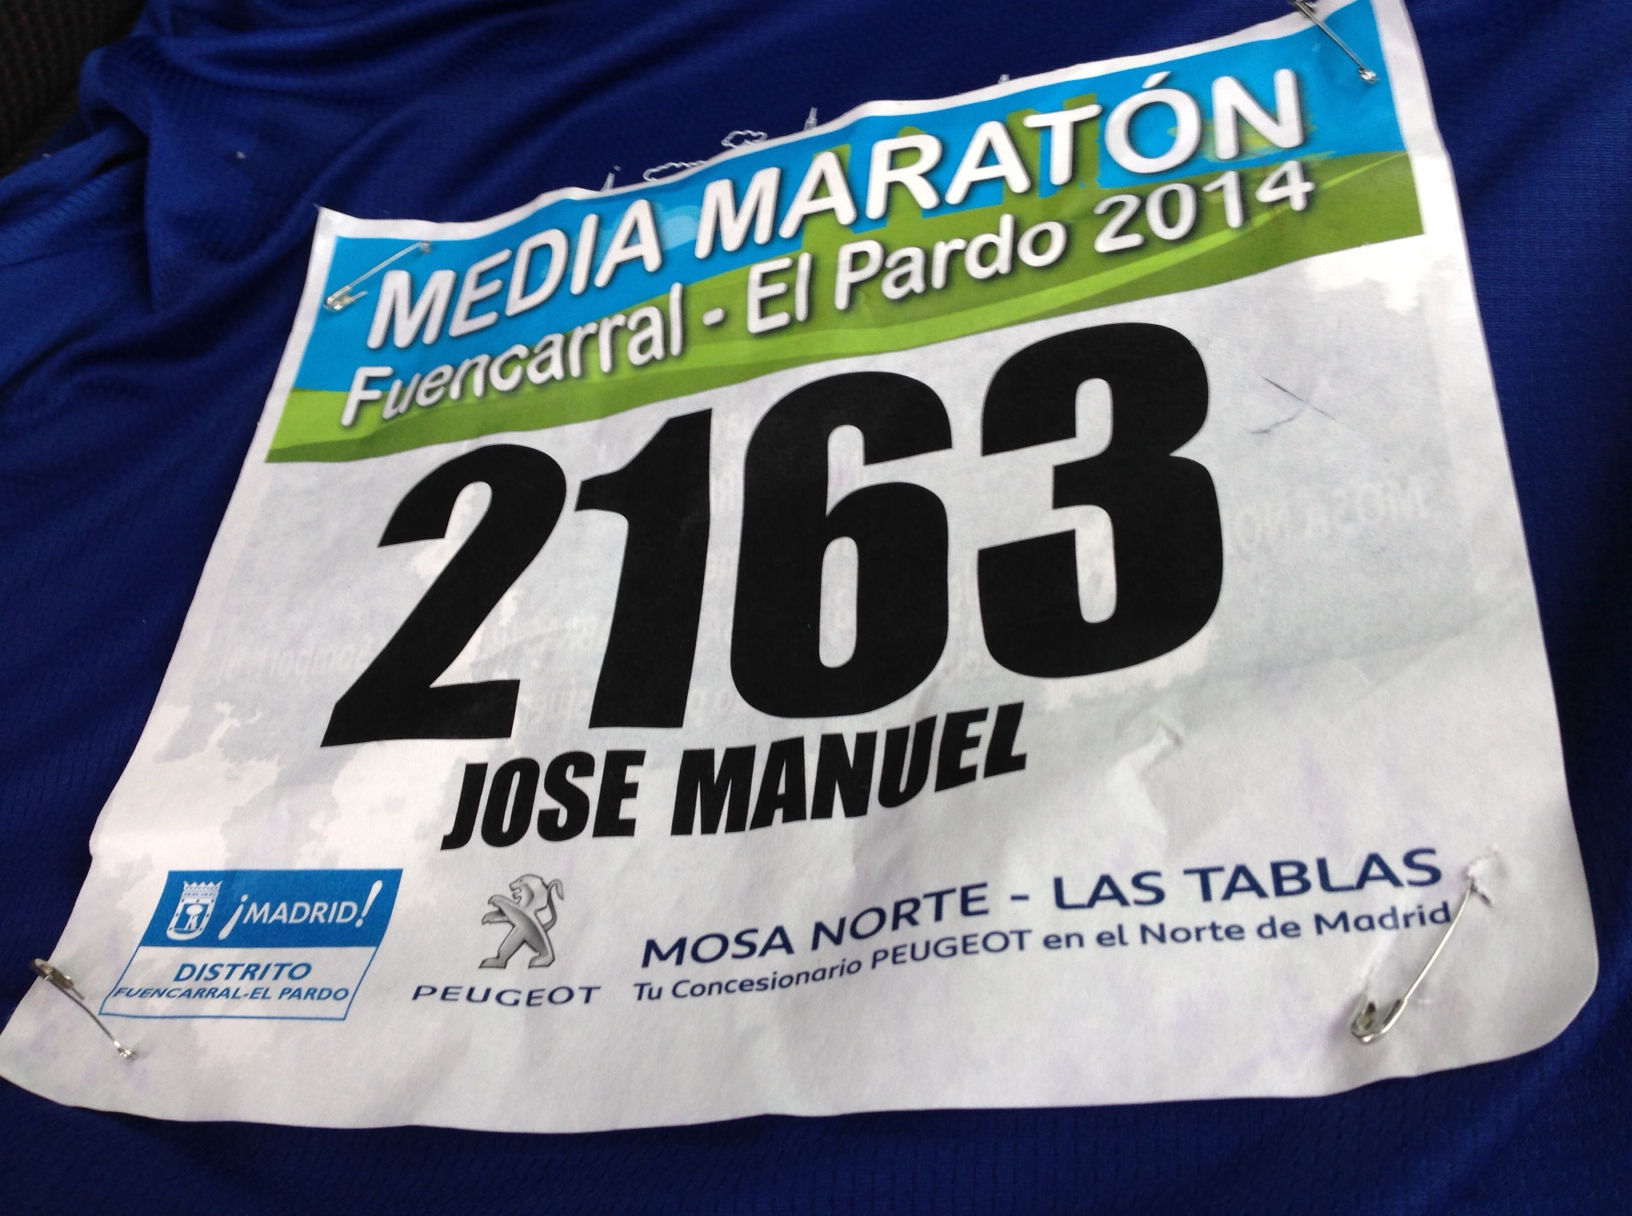 Media Maratón de Fuencarral – El Pardo 2014. La Número 100 | La República Running